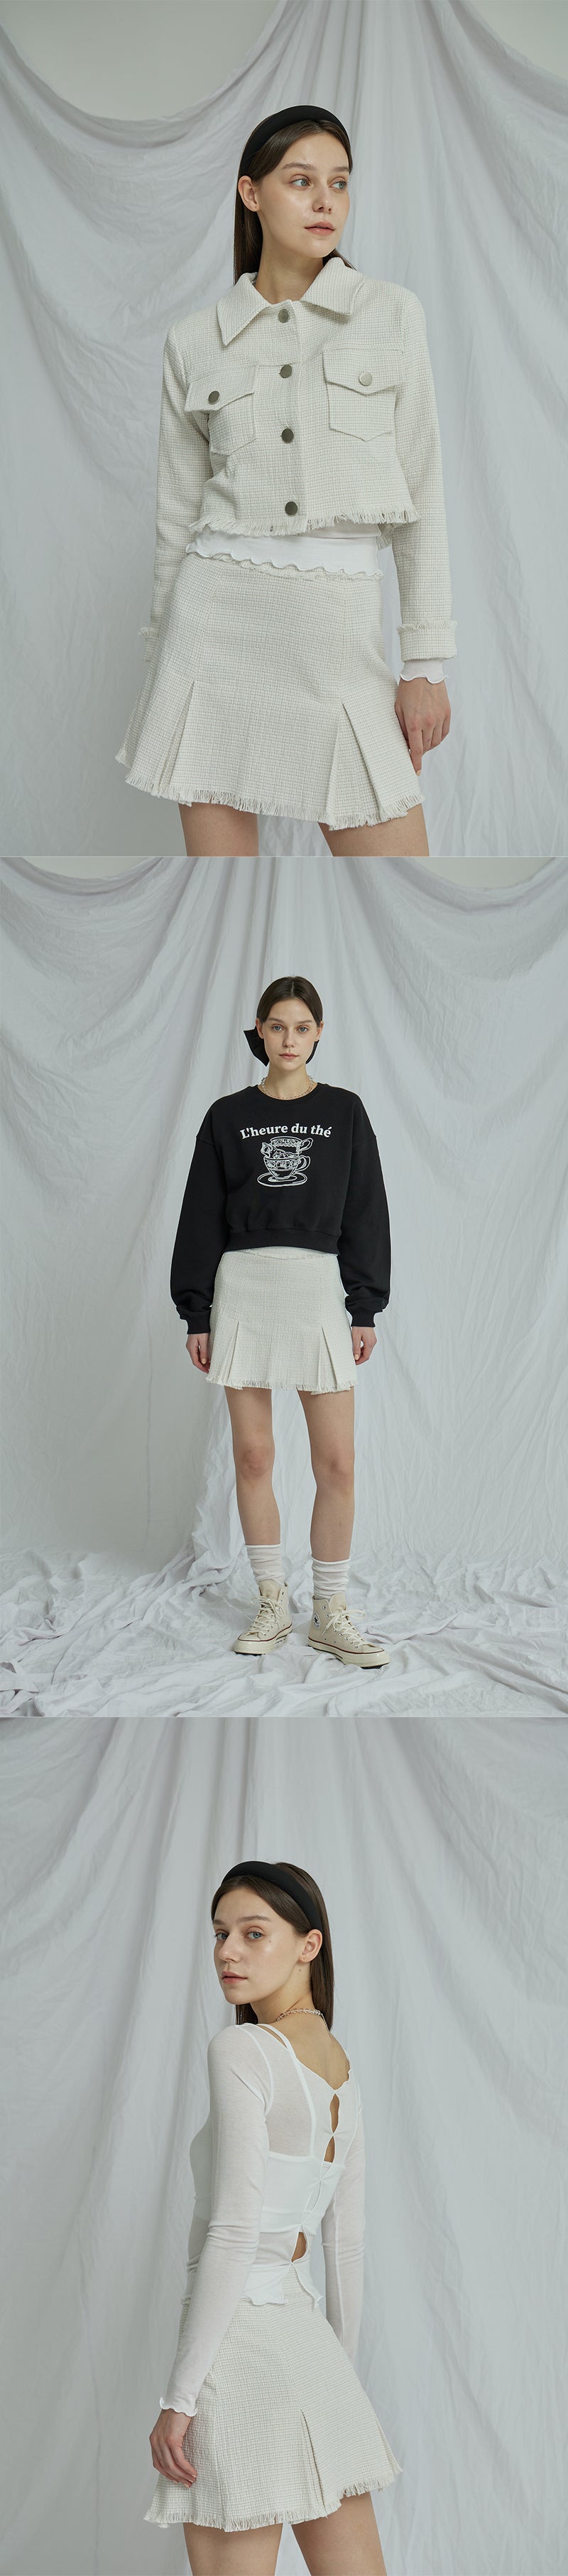 タッスルスカート / Tasseled skirt